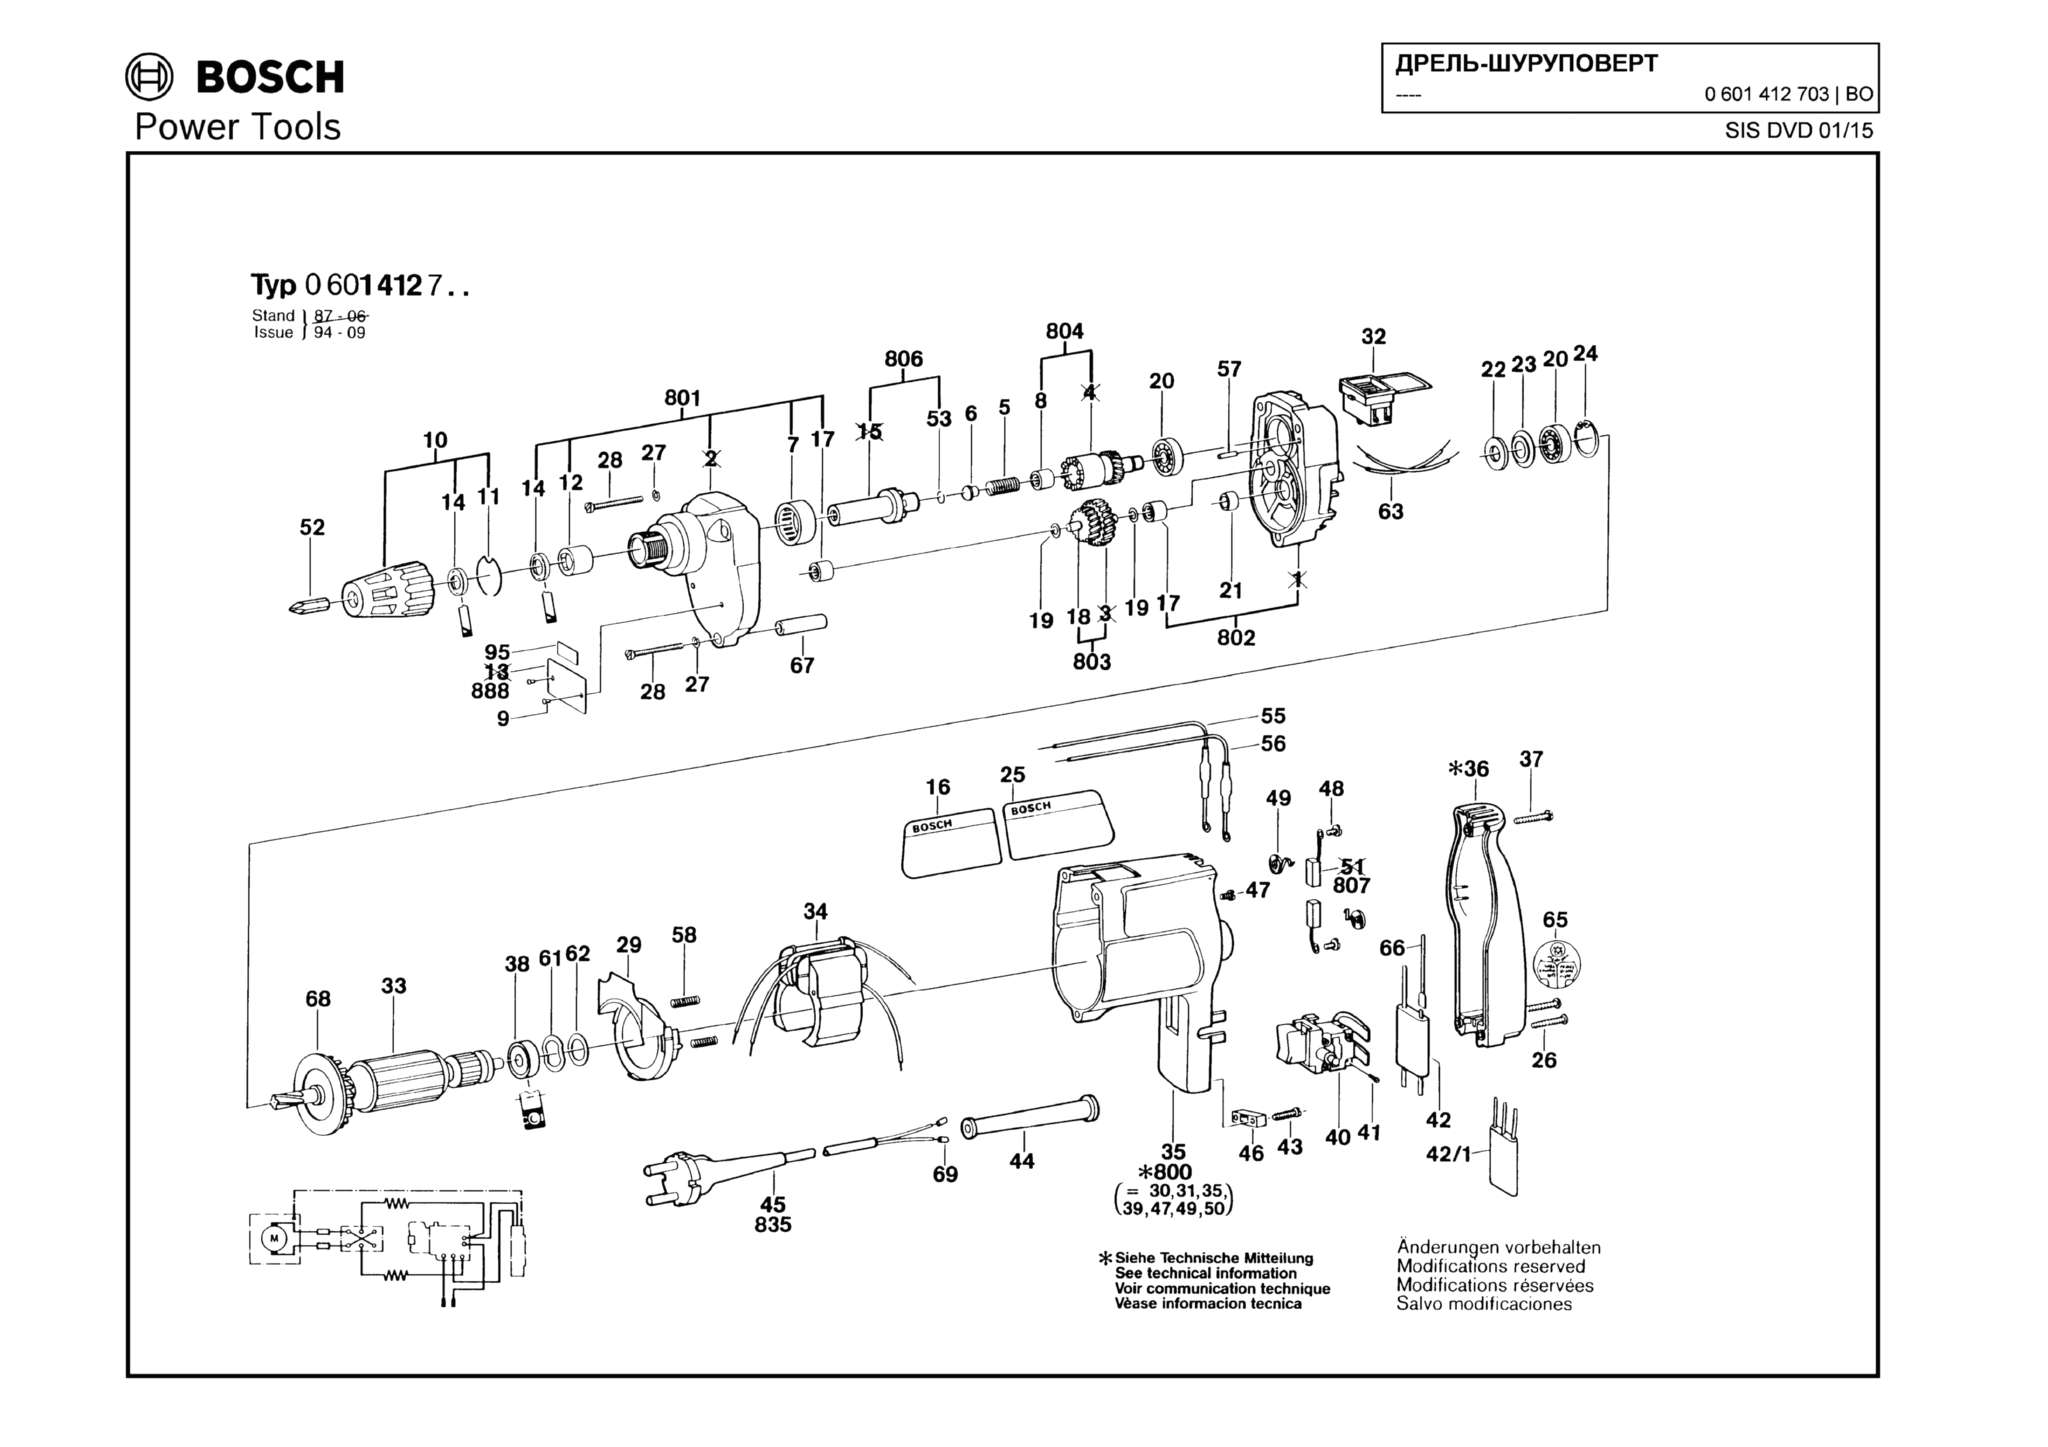 Запчасти, схема и деталировка Bosch (ТИП 0601412703)